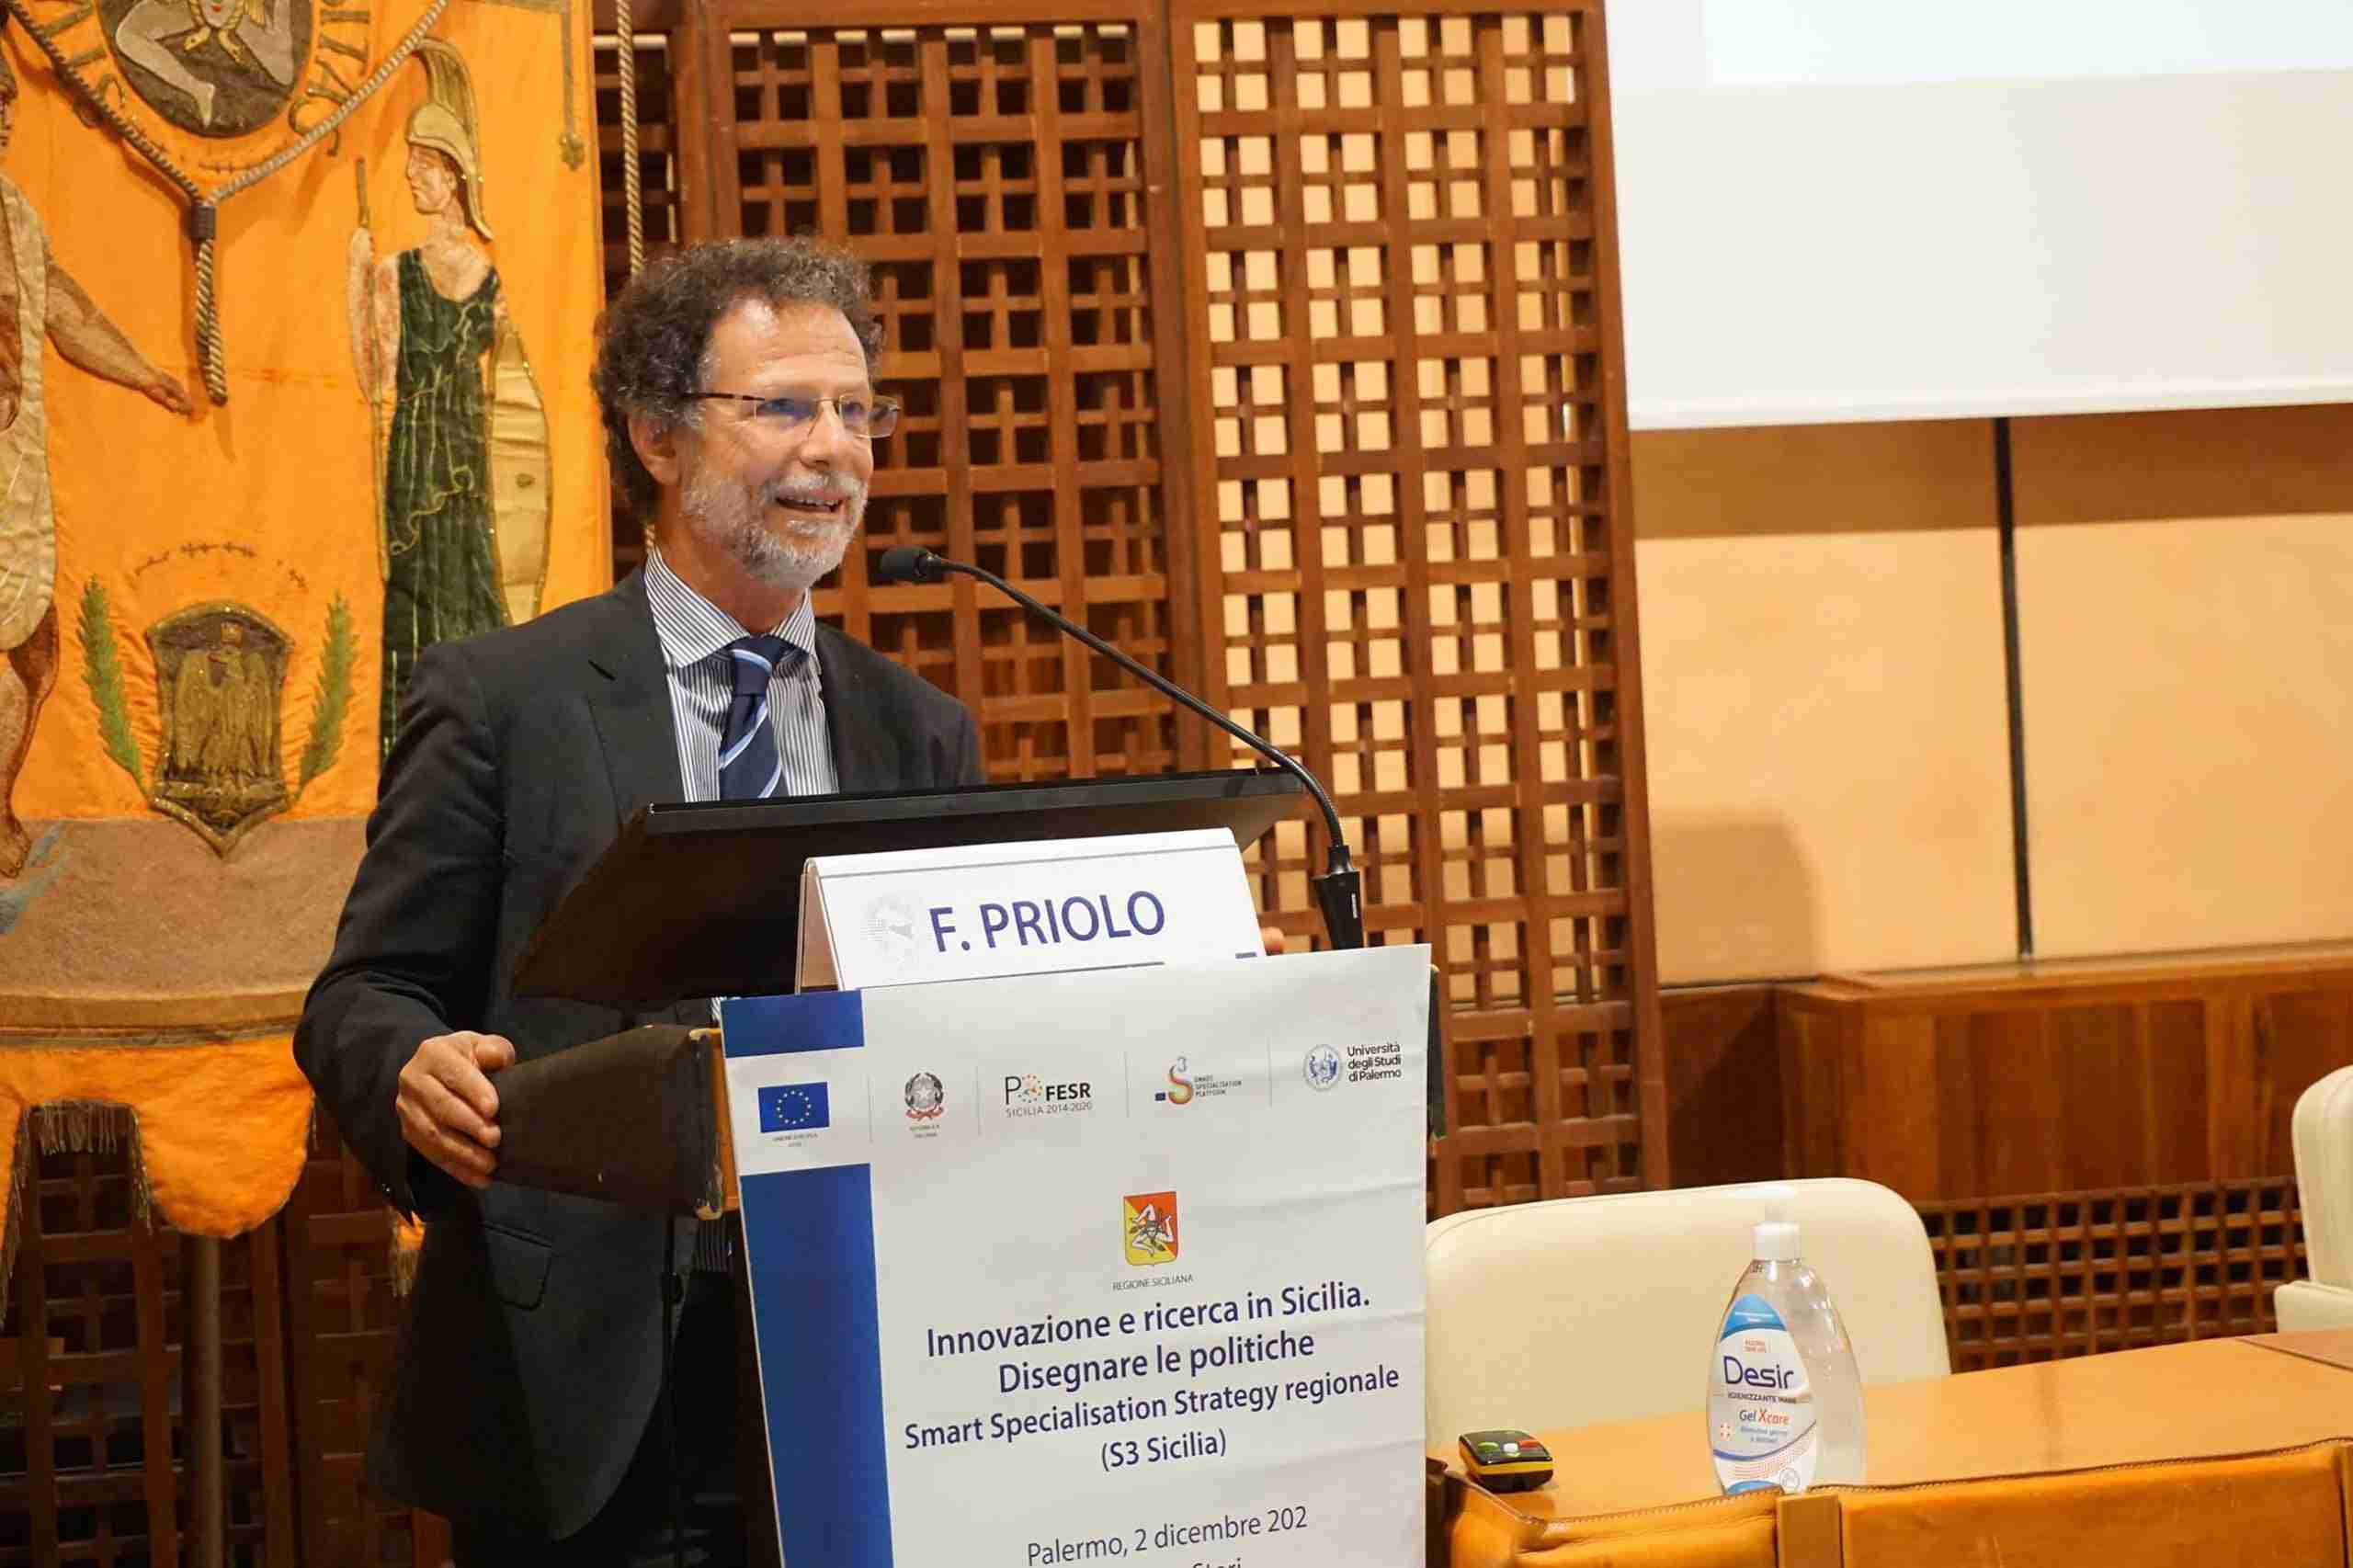 Innovazione e Ricerca in Sicilia, le università al centro della Strategia regionale